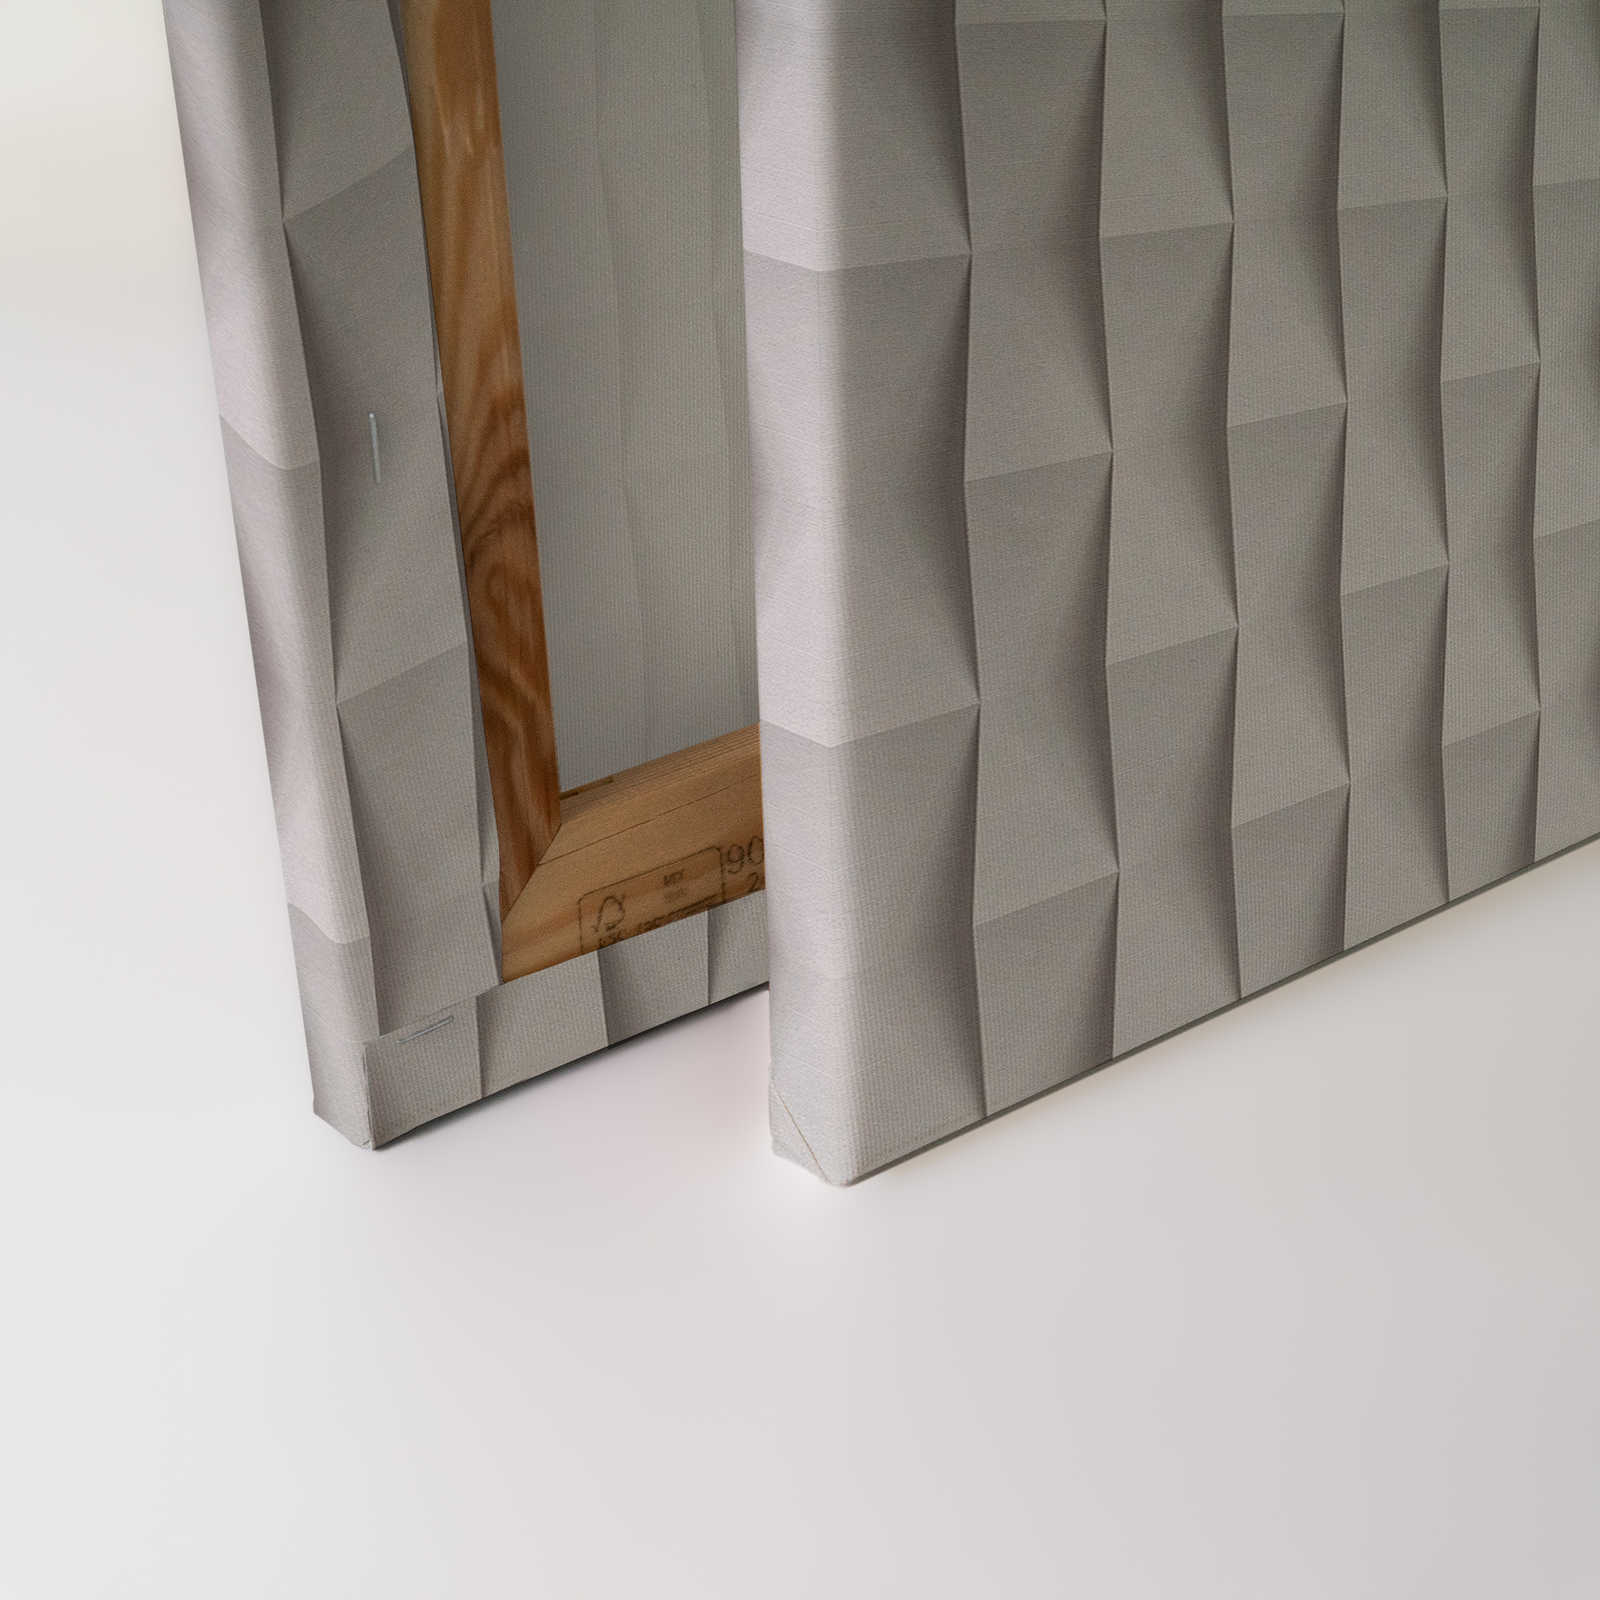             Casa de papel 2 - Pintura en lienzo 3D Diseño plegado de papel con sombras - 1,20 m x 0,80 m
        